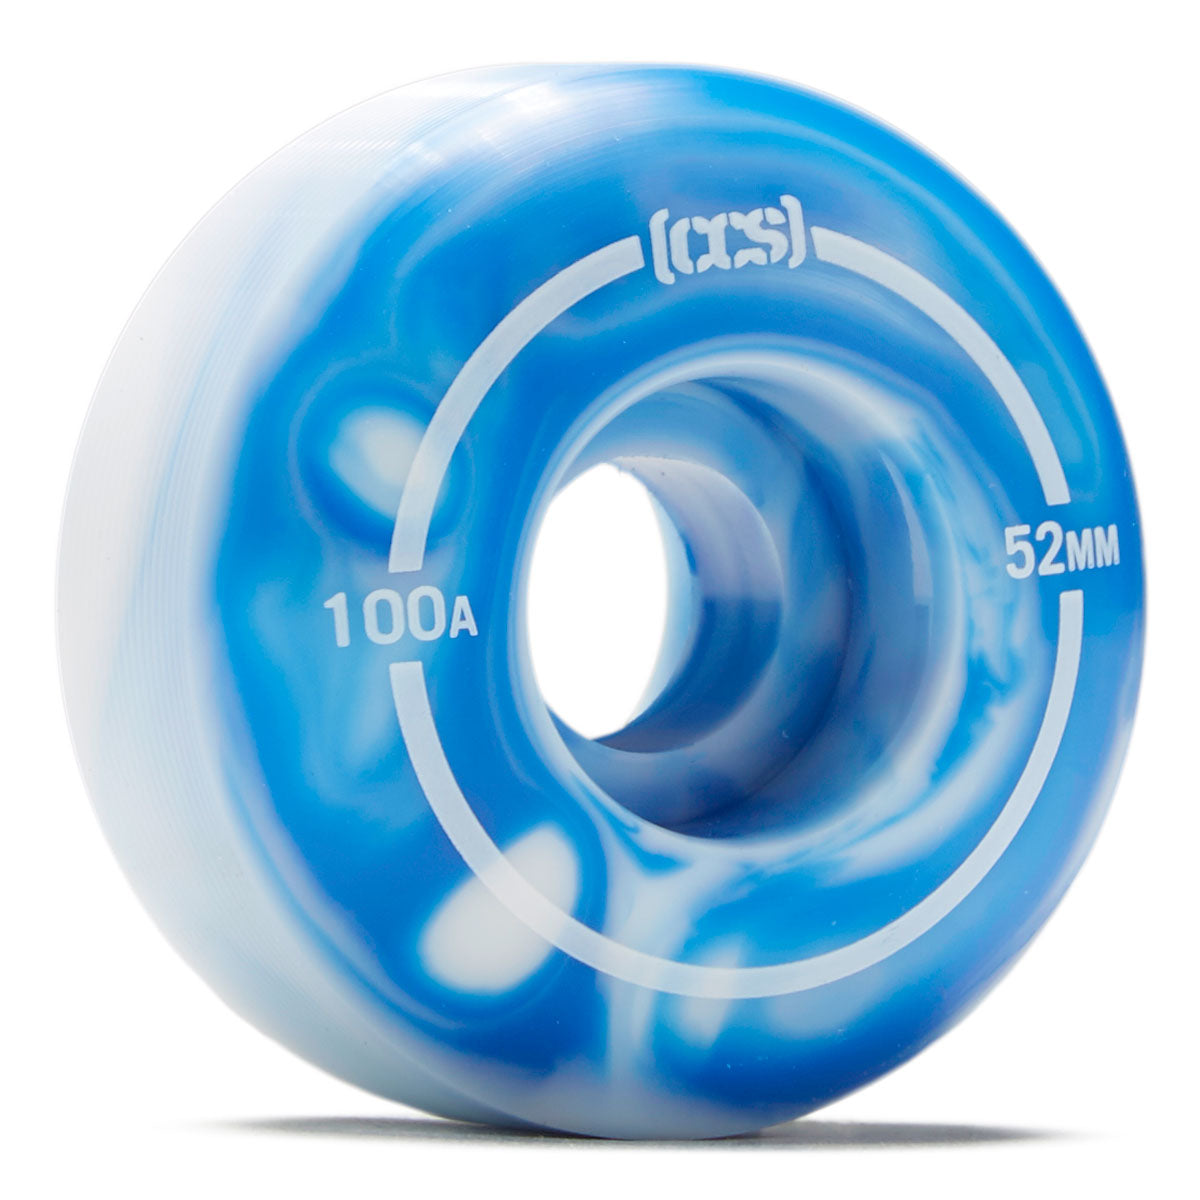 CCS Swirl Skateboard Wheels - Blue - 52mm image 1